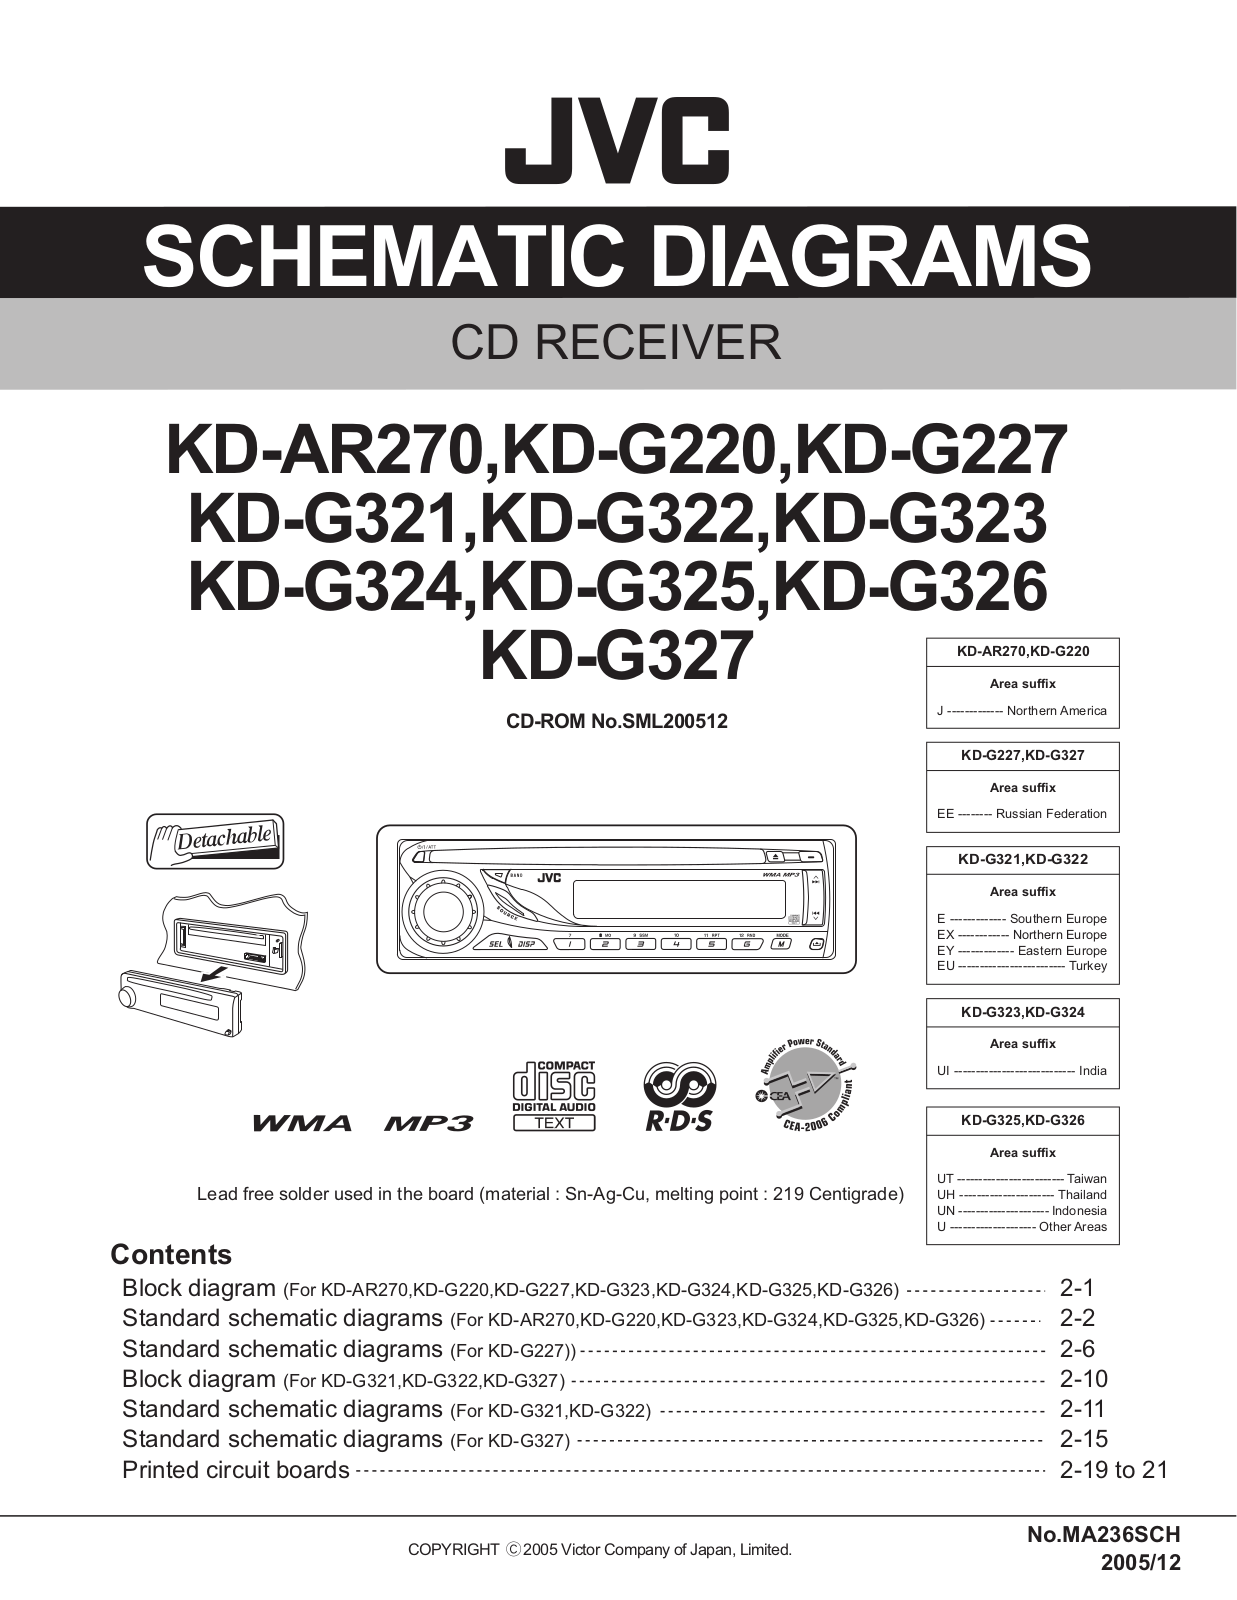 JVC KDAR-270, KDG-220, KDG-227, KDG-321, KDG-323 Schematic